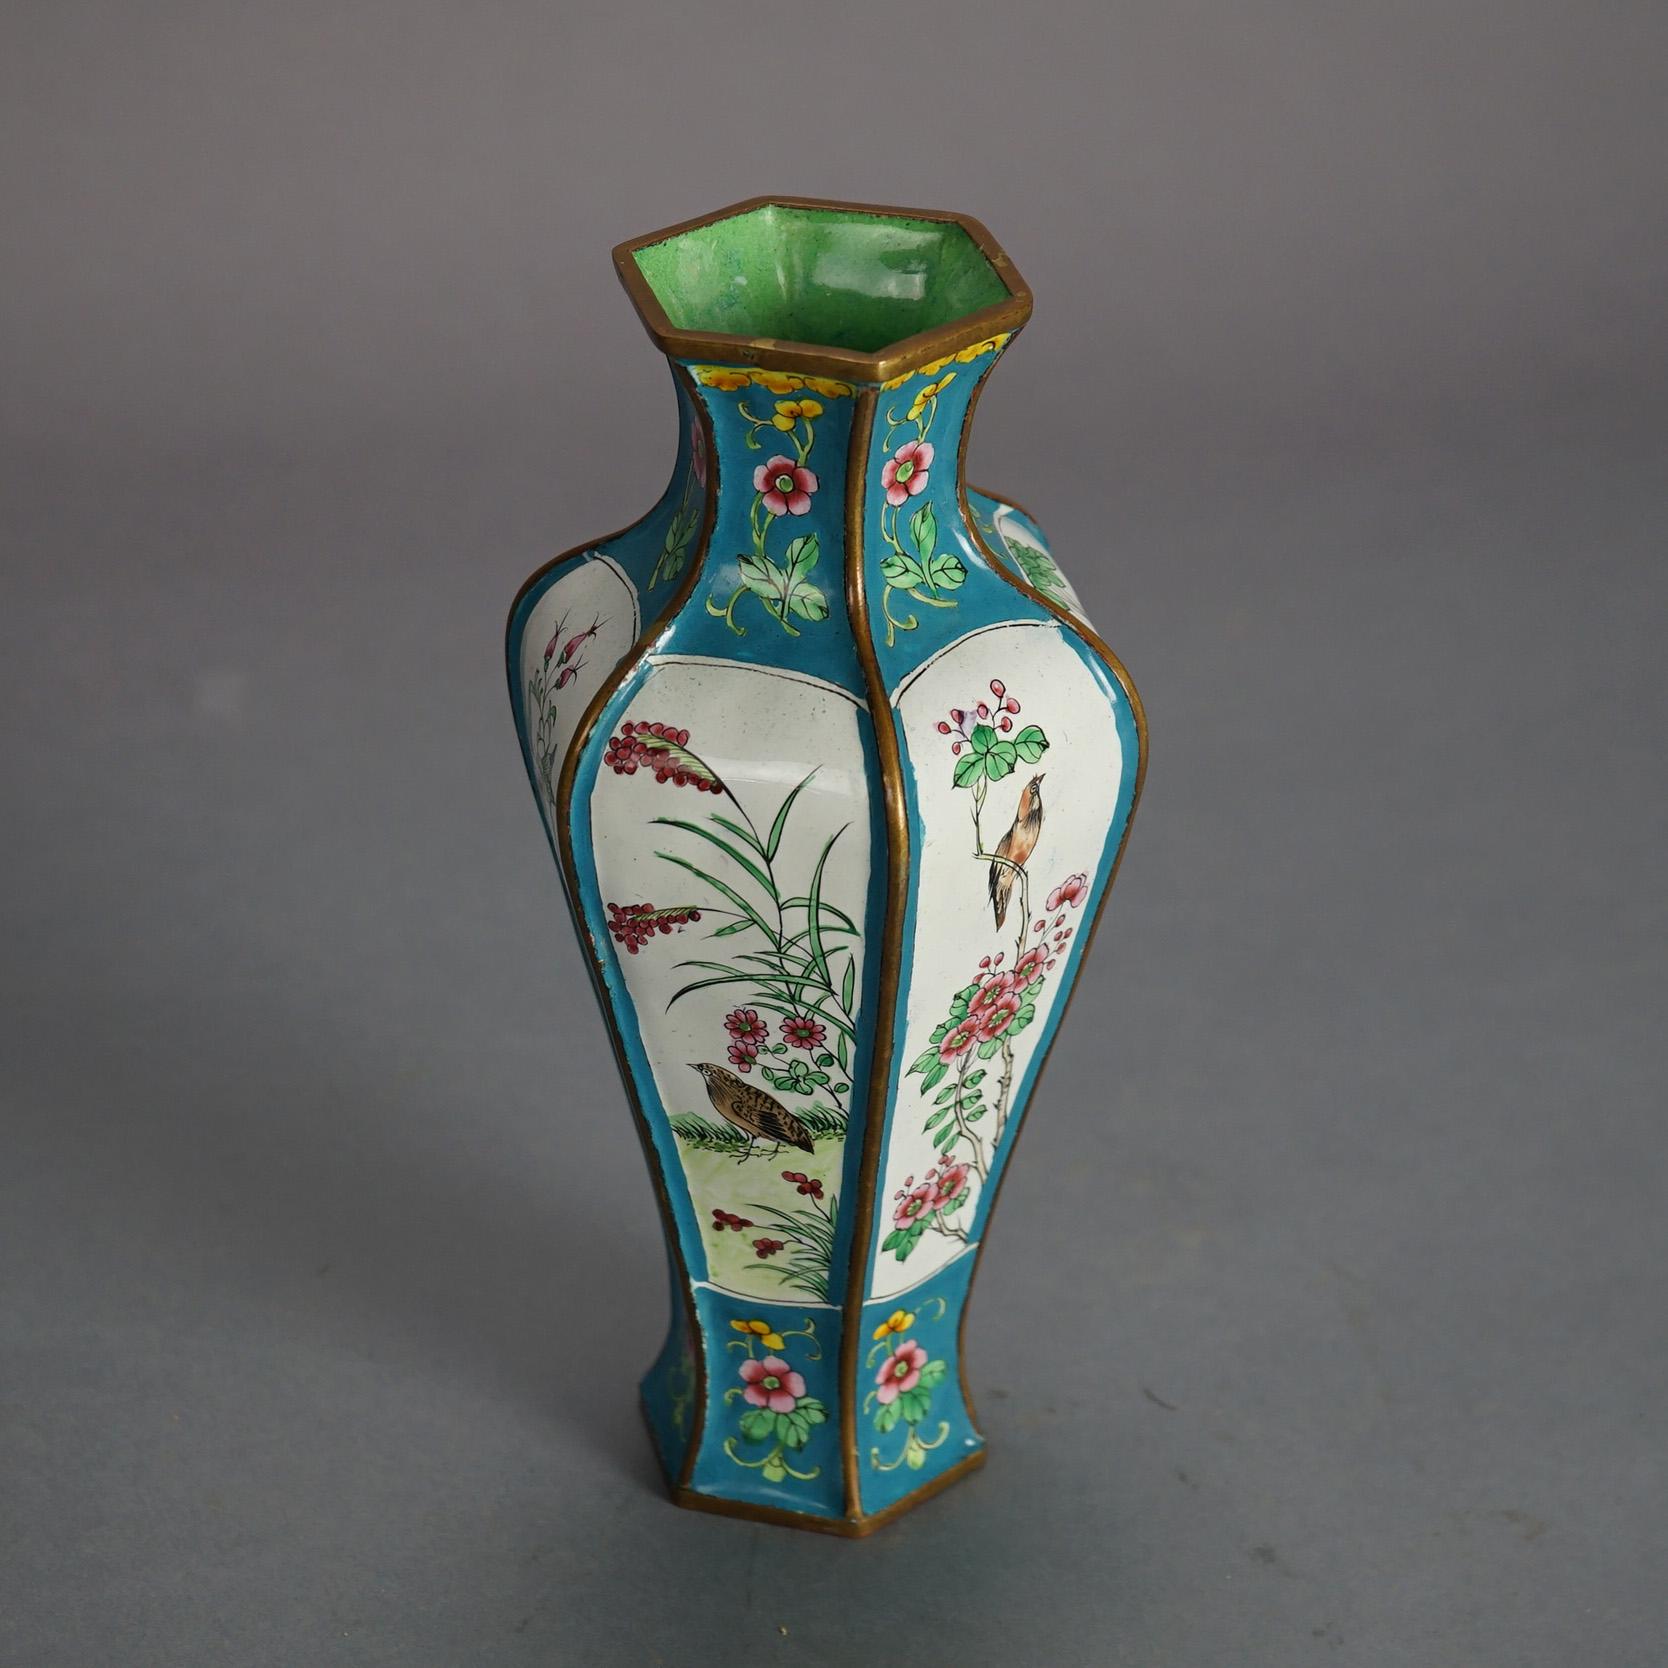 Chinese Enameled & Polychromed Garden Scene Vase with Birds 20thC

Measures - 9